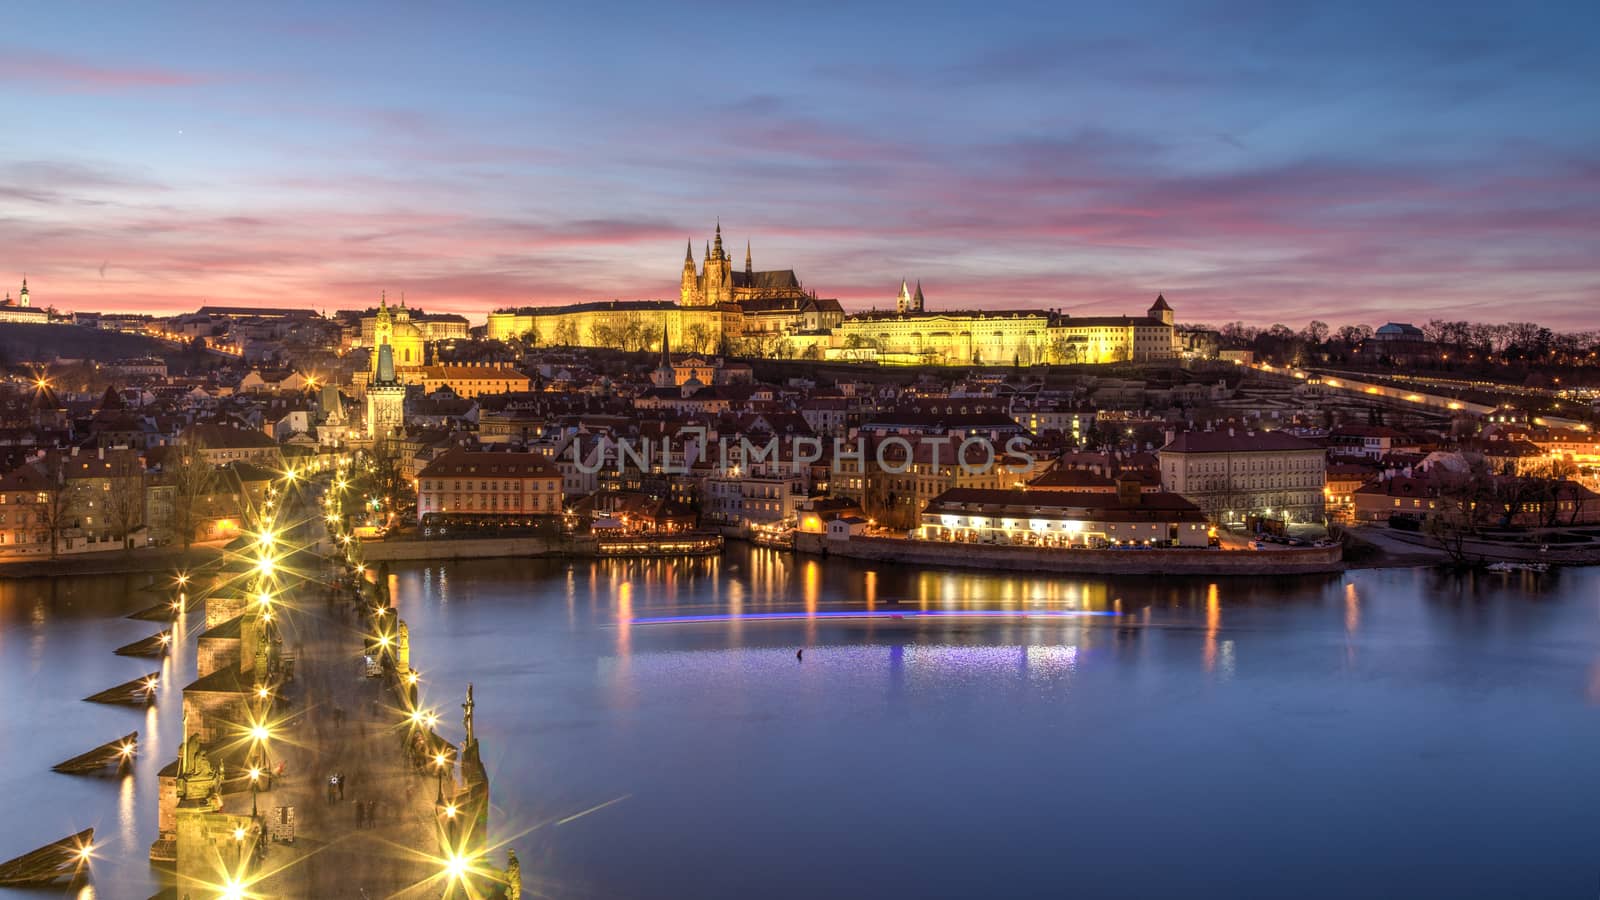 Prague Castle and Charles Bridge by oliverfoerstner